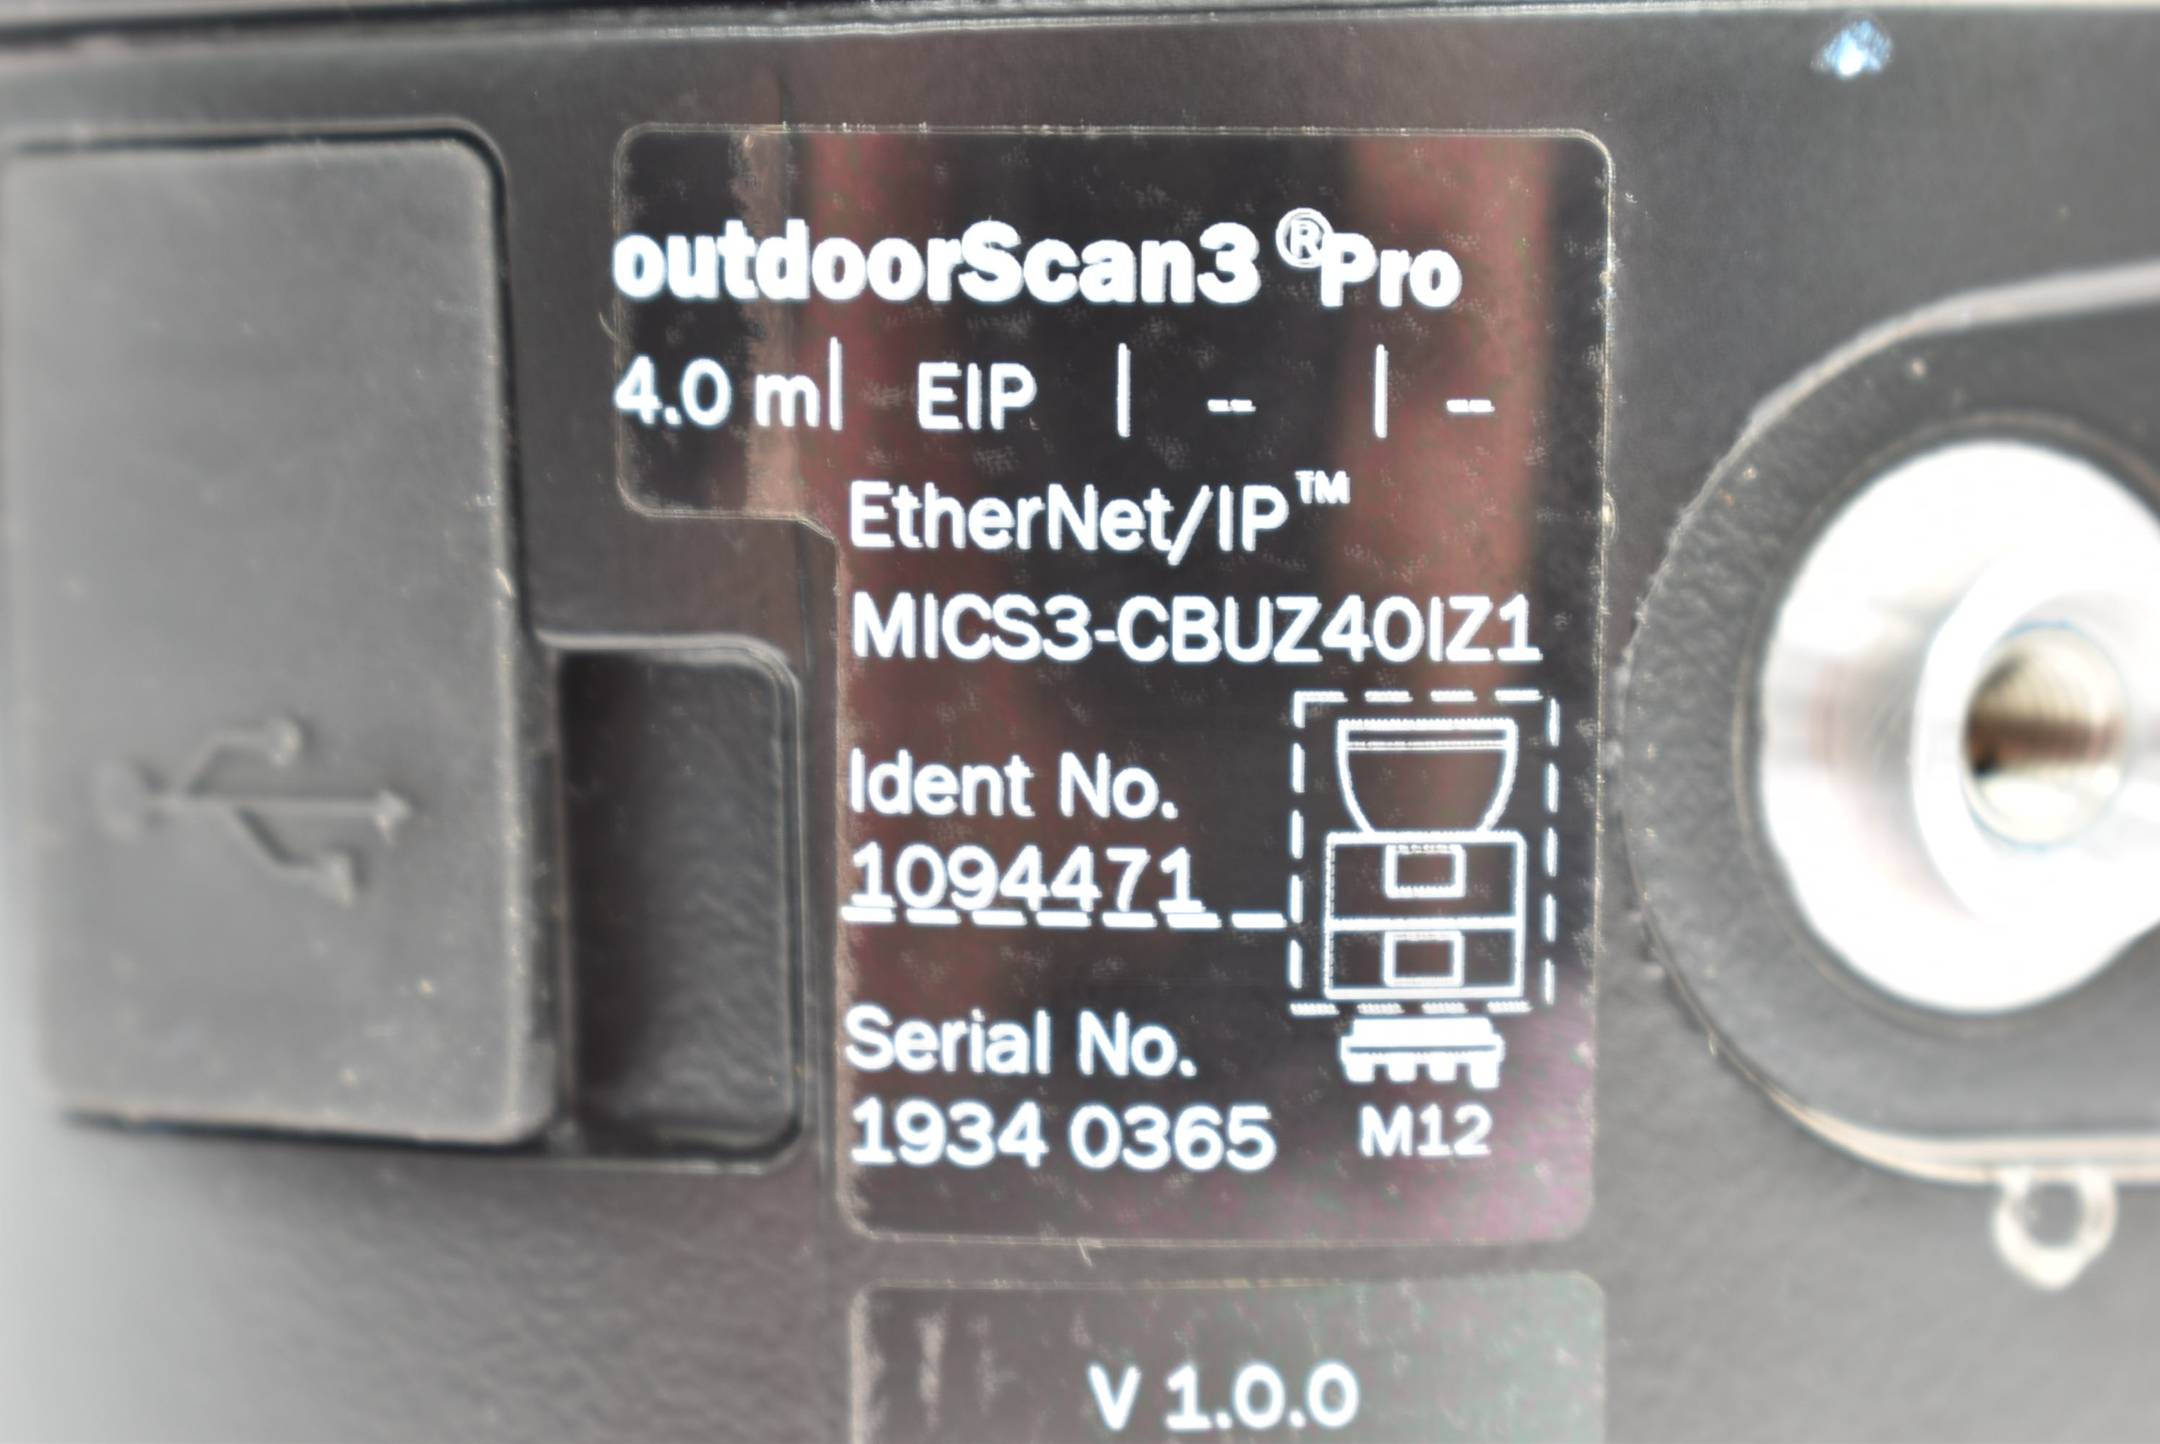 SICK Sicherheitslaserscanner outdoorScan3 Pro MICS3-CBUZ40IZ1 ( 1094471 )